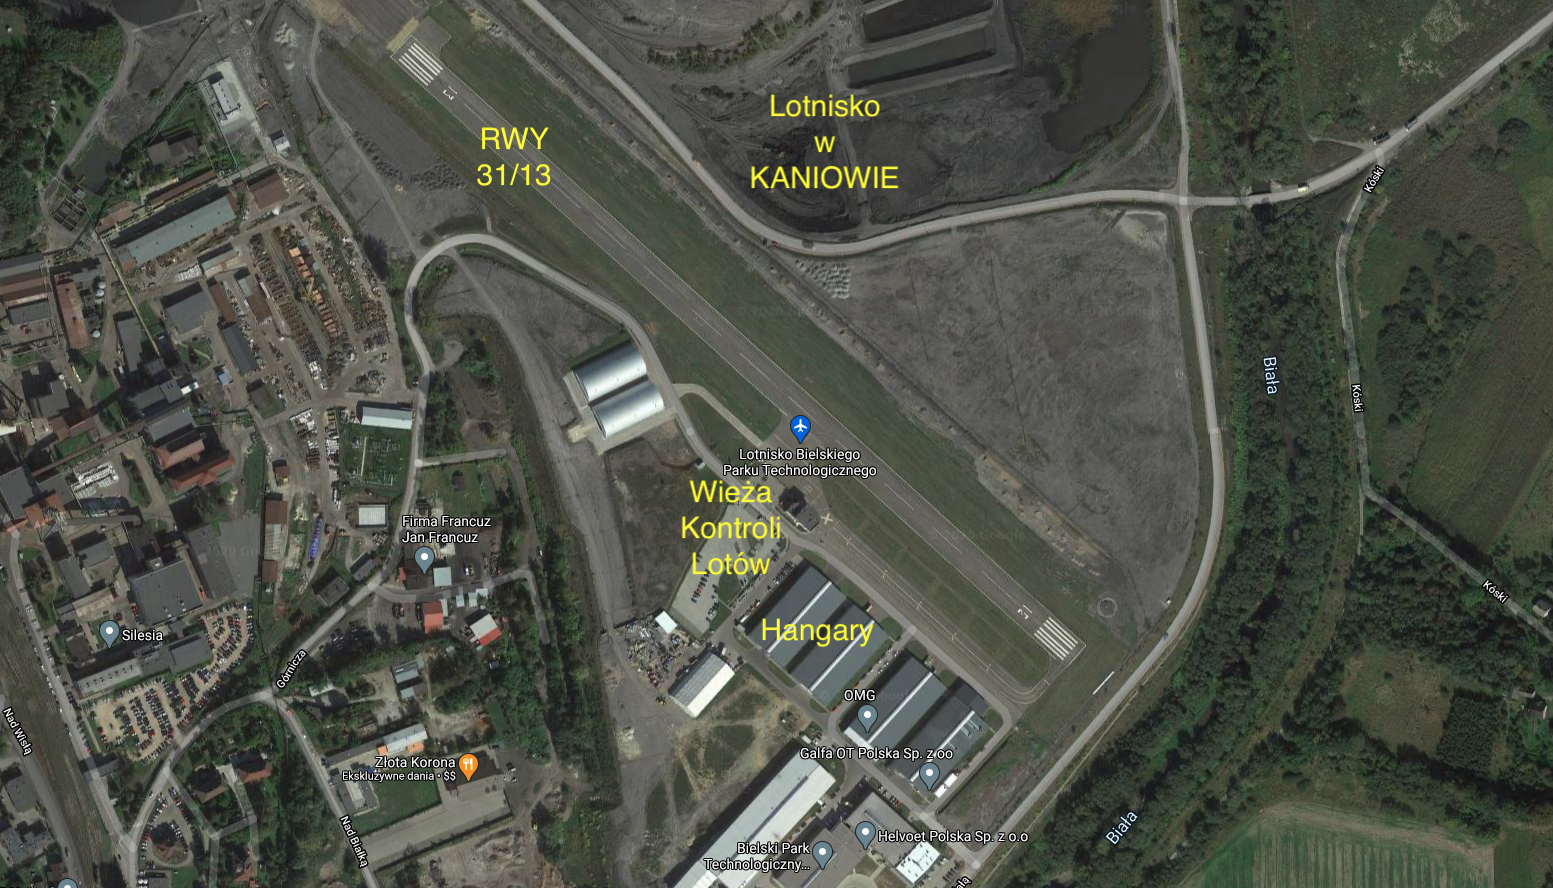 Kaniów airport. 2021 year. Satellite image